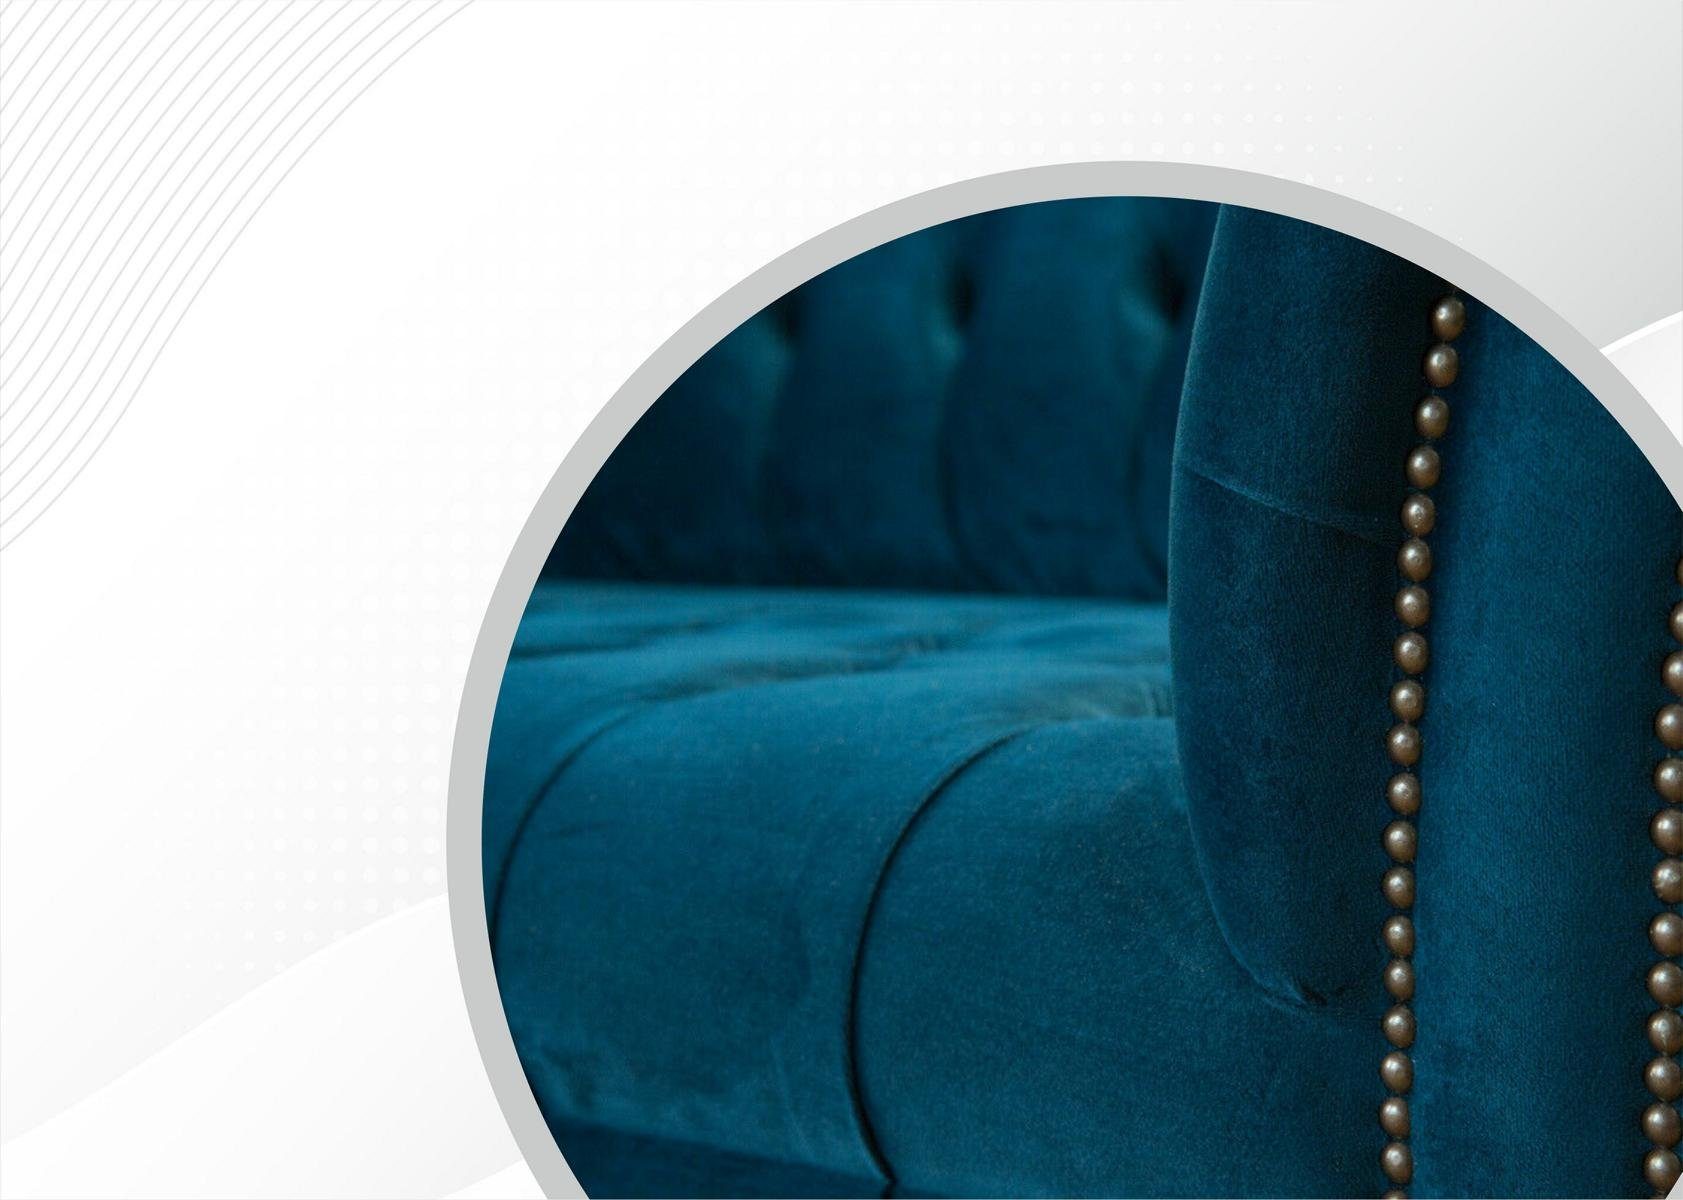 Polster Sitz JVmoebel Sofa, Textil Chesterfield Couch Dreisitzer 3 Modern Sitzer Sofa